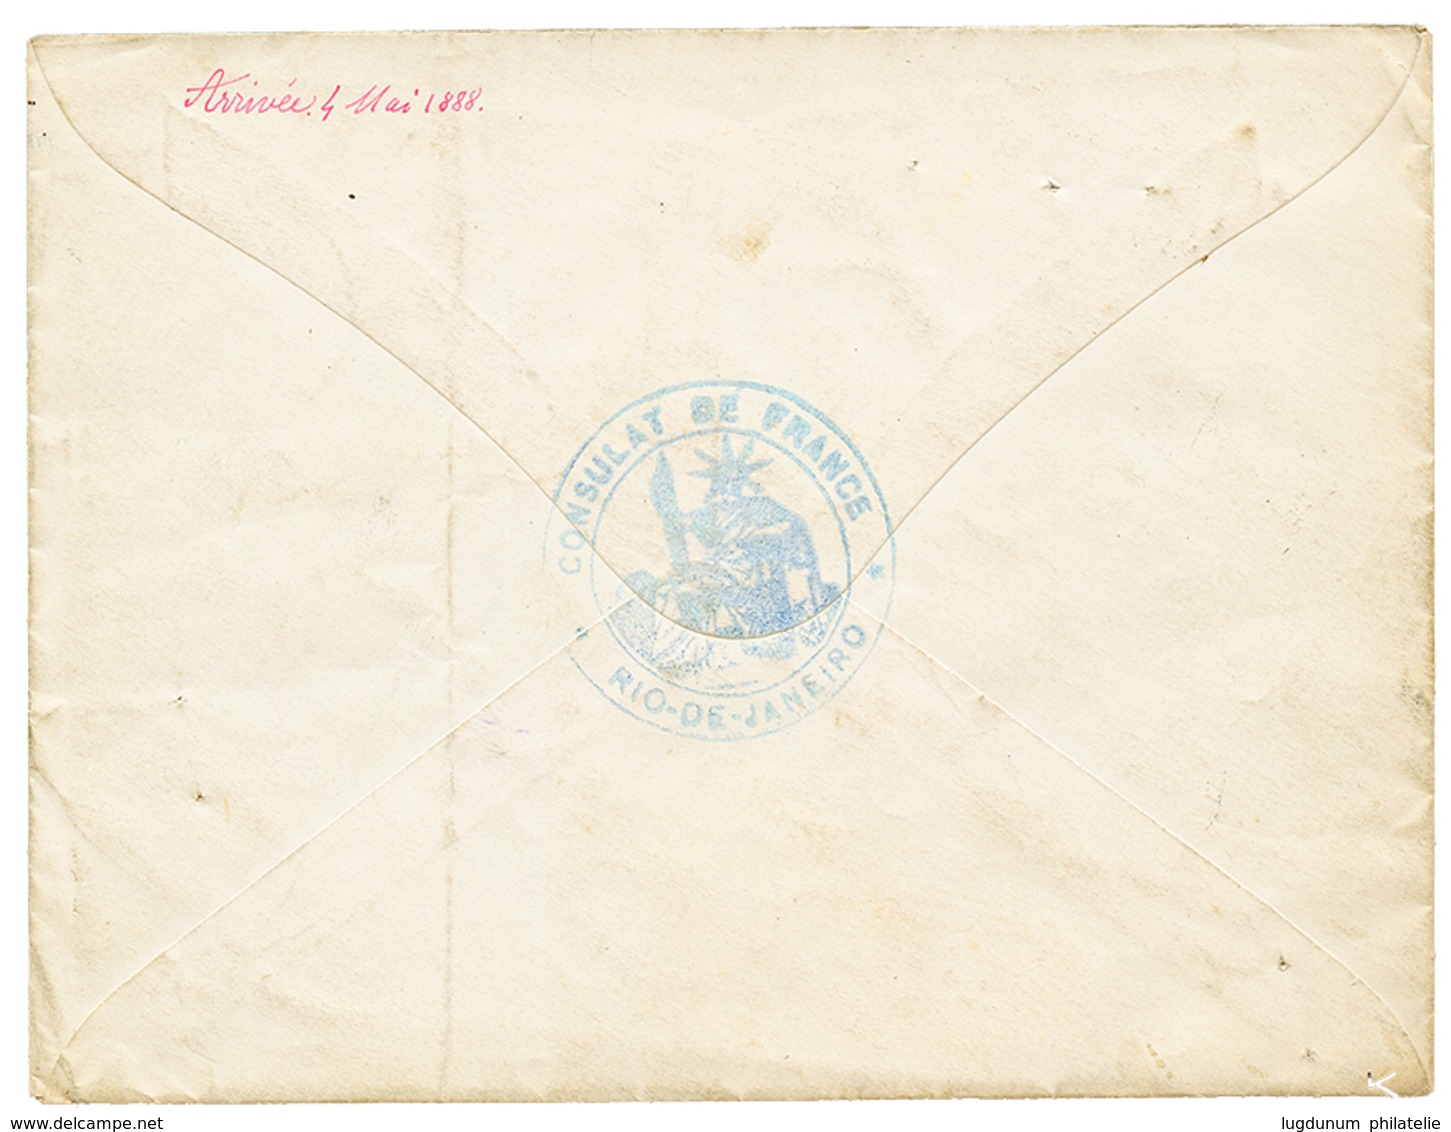 "BRESIL" : 1888 LIGNE J PAQ FR N°1 + CONSULAT DE FRANCE A RIO DE JANEIRO + TAXE 5c+ 15c + 30c Sur Env. Pour PARIS. RARE. - Poste Maritime